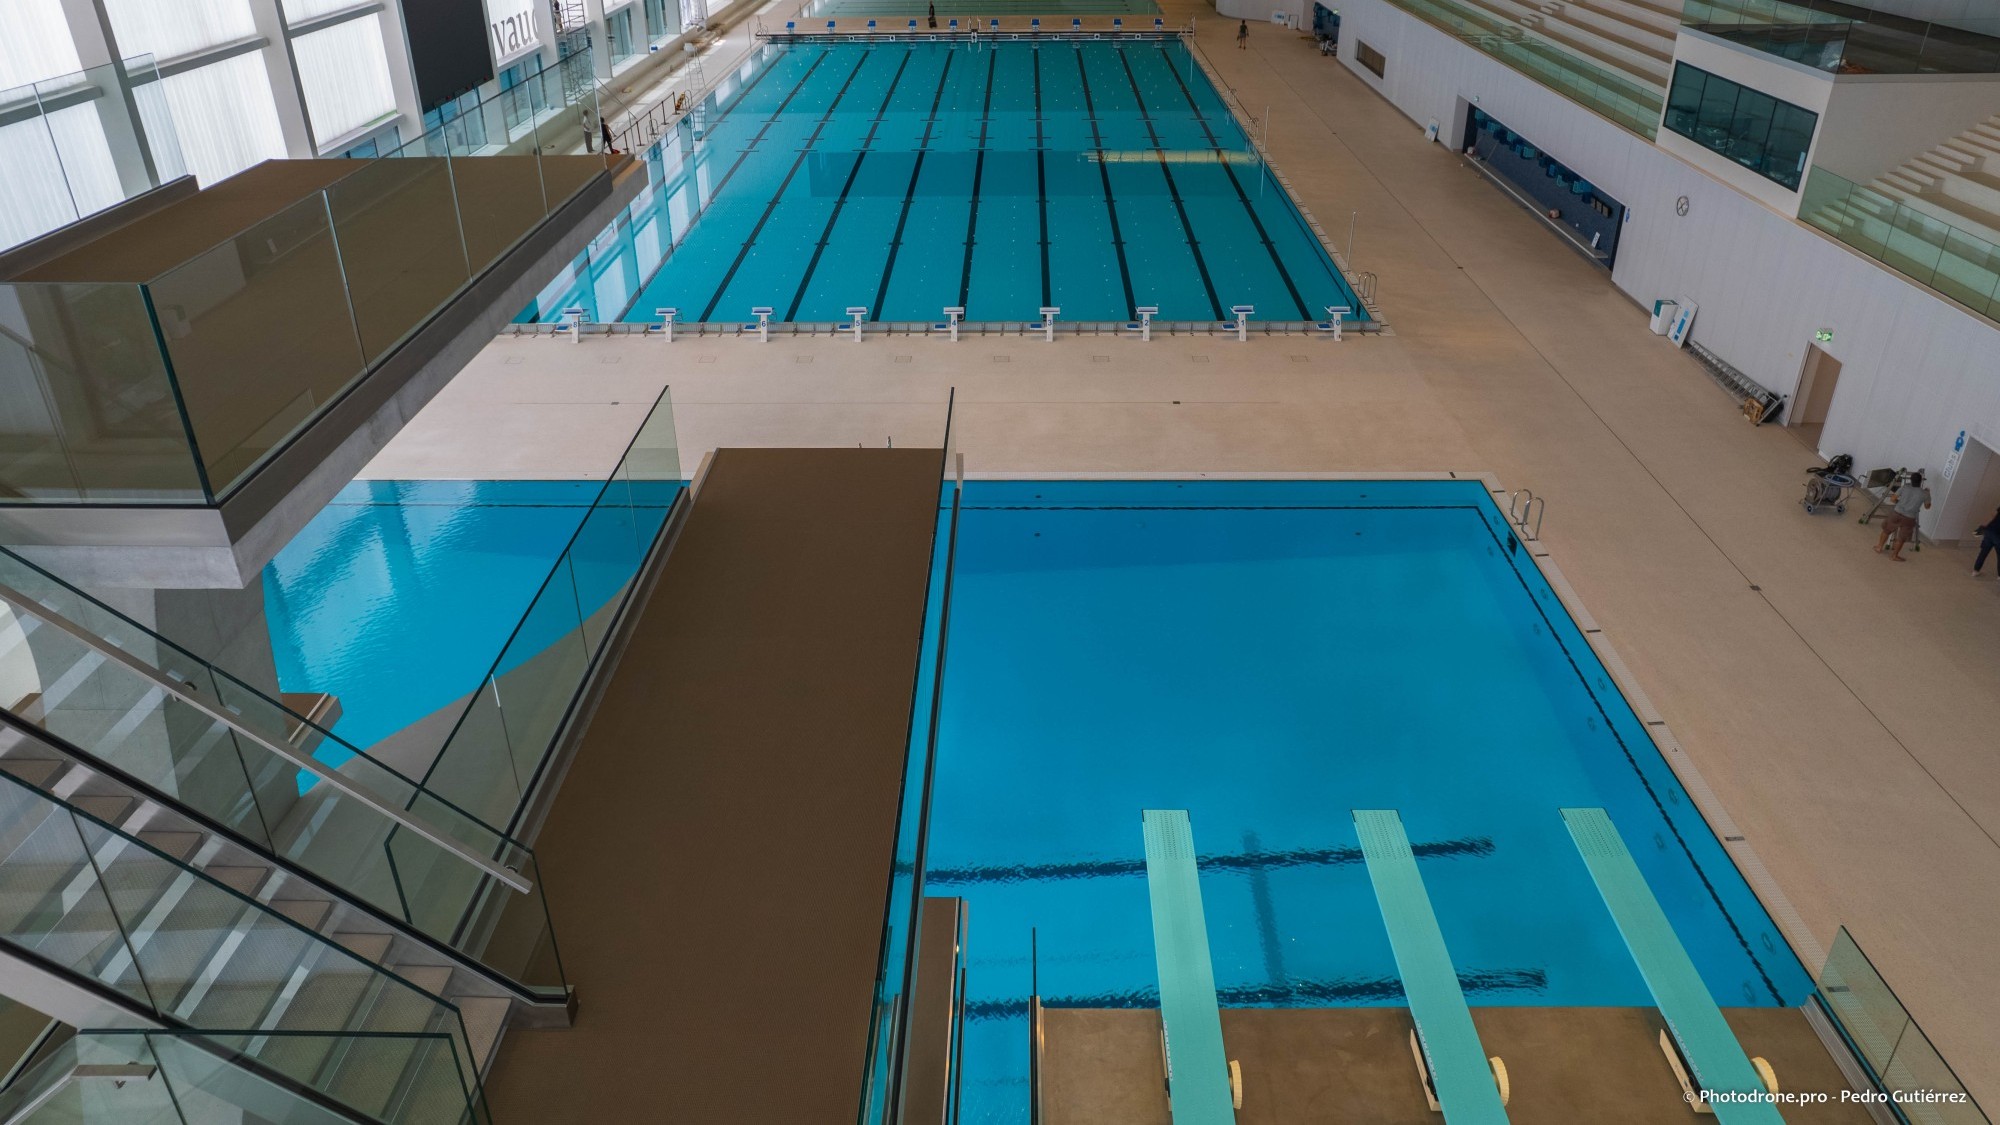 La Vaudoise Aréna c'est désormais, outre les patinoires, deux bassins de natation, dont un de dimension olympique de 50 m sur 25 m et l’autre de loisirs de 30 m sur 25 m, ainsi qu’une fosse à plongeon allant jusqu’à 10 m de hauteur.